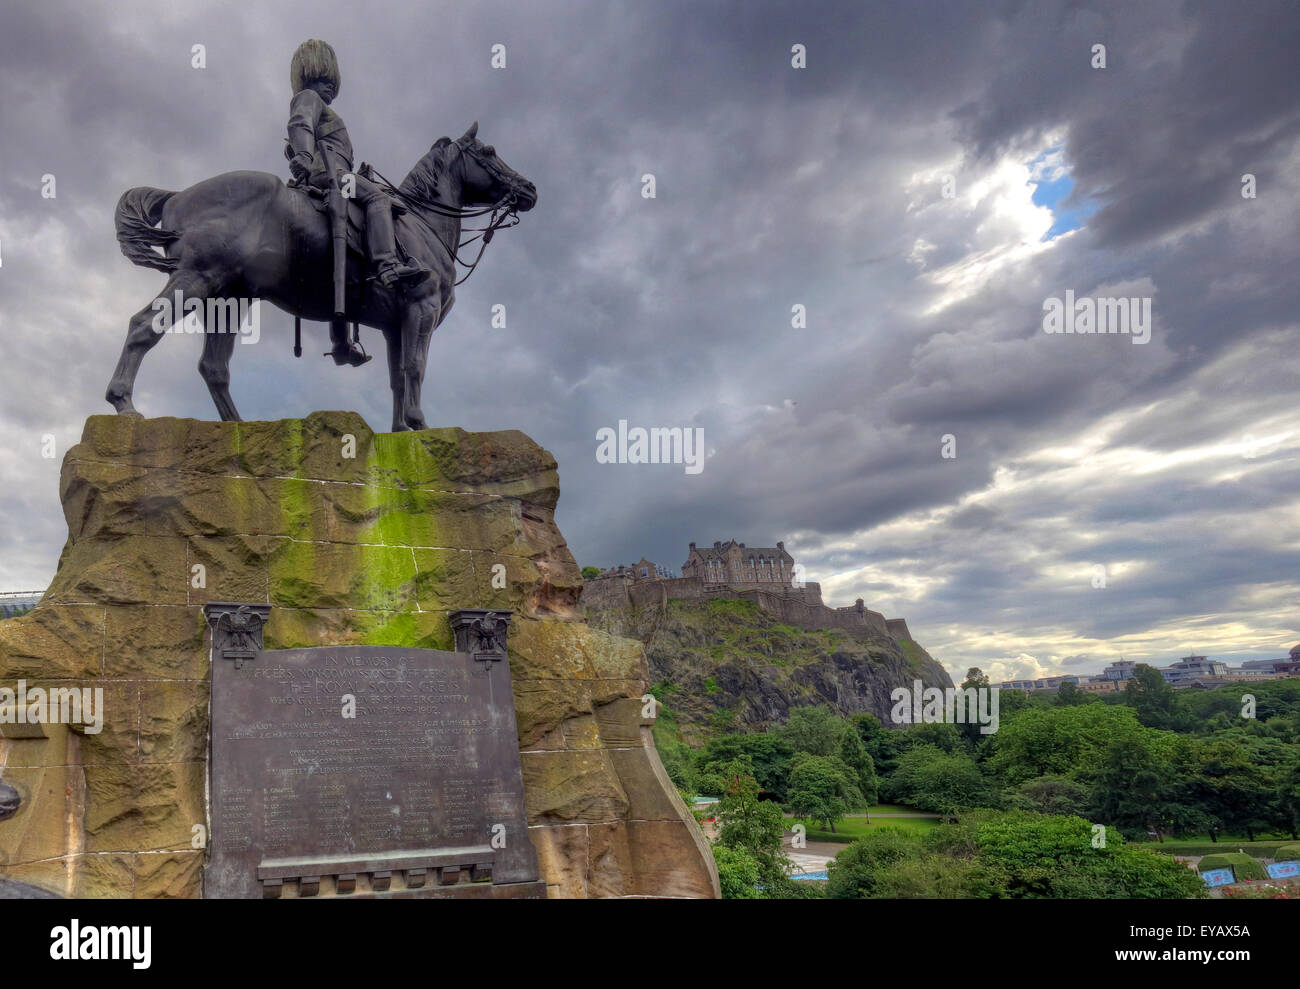 Statua/lapide in memoria del Royal Scots Grays, Princes St, Edimburgo, Scozia, Regno Unito Foto Stock